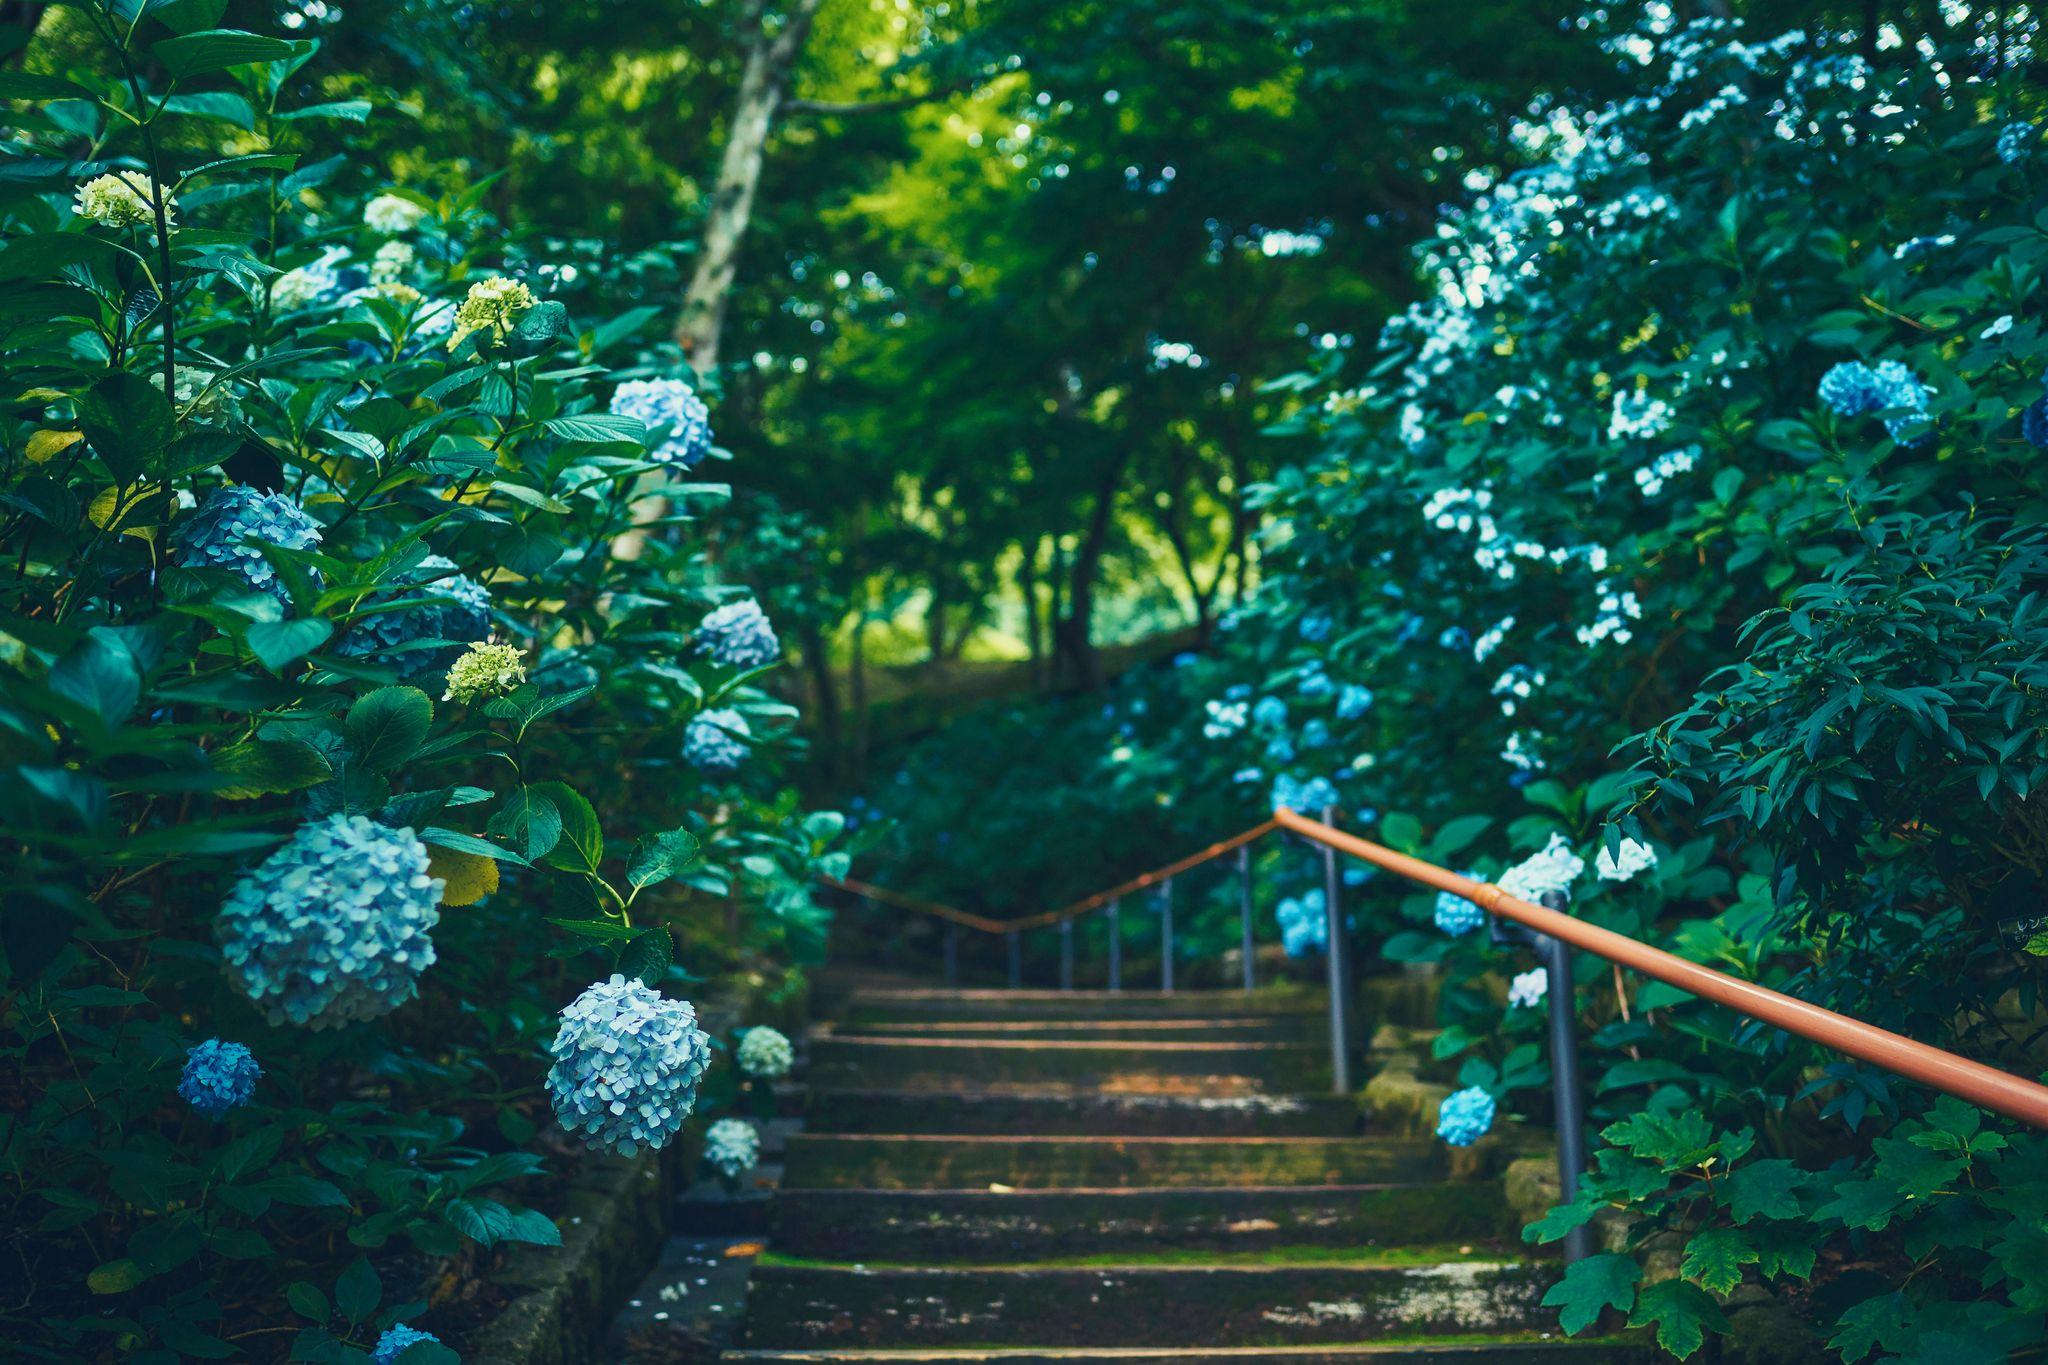 神戸の”隠れアジサイスポット？”神戸布引ハーブ園。「アジサイ」が見ごろを迎えました。園内の各所に様々なロケーションの「アジサイのある初夏の風景」が。瑞々しい情景に心が涼みます。